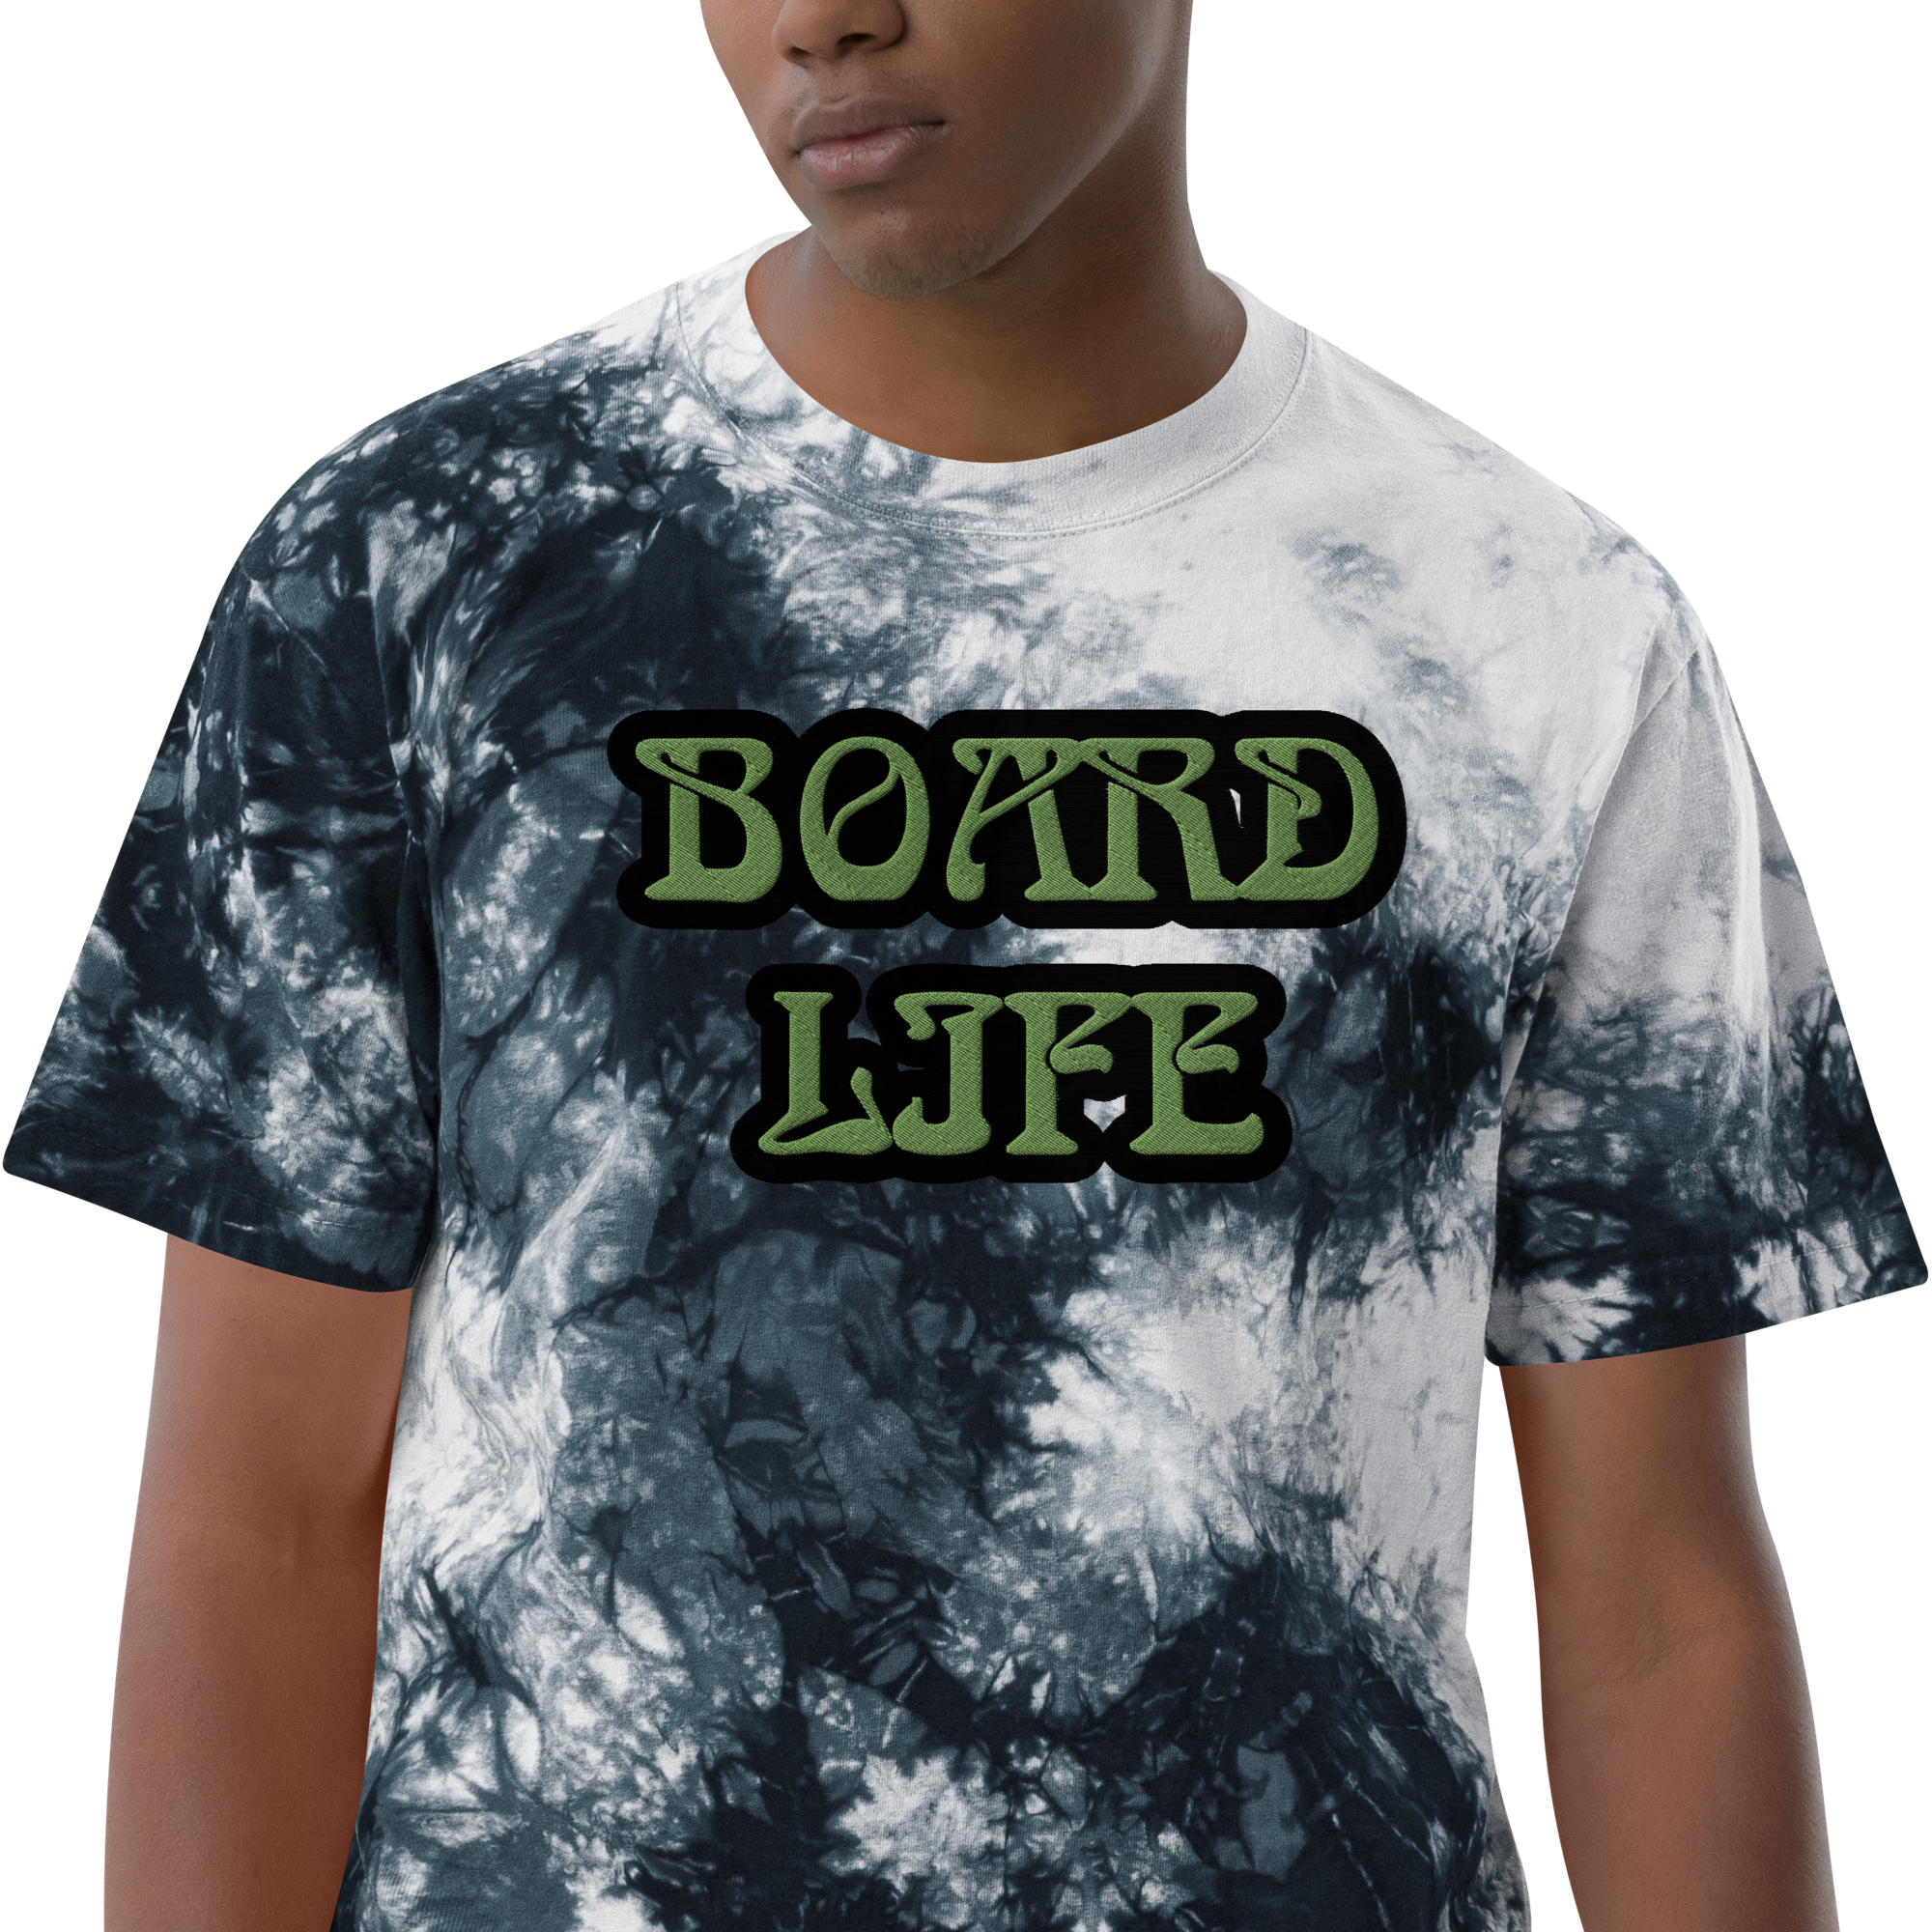 Camiseta tie-dye con bordado Board Life